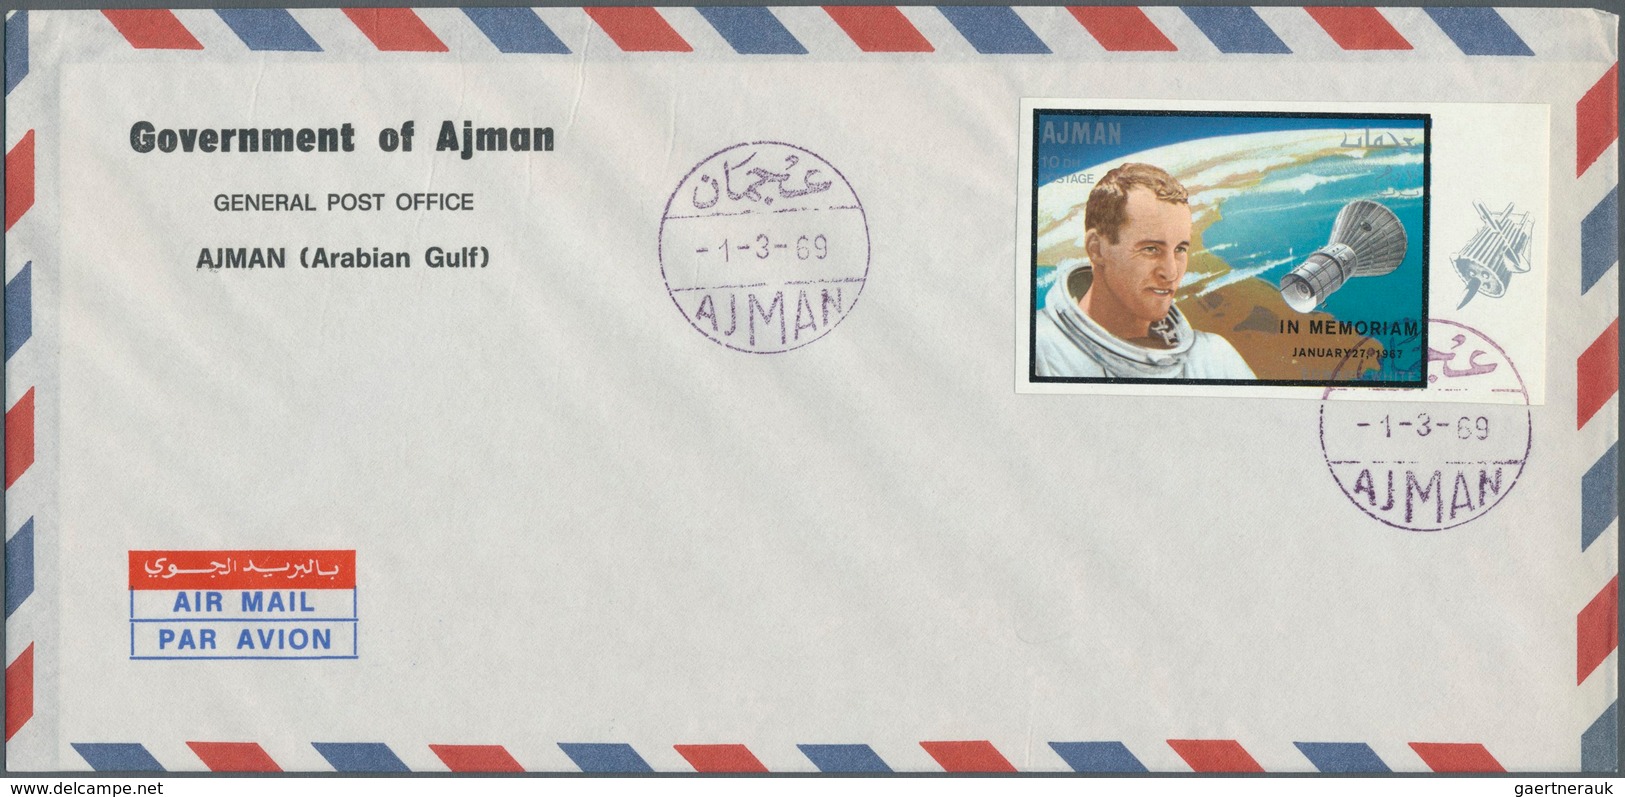 Thematik: Raumfahrt / astronautics: 1969, SPACE (Apollo 9+10, Gagarin, White), four values with over